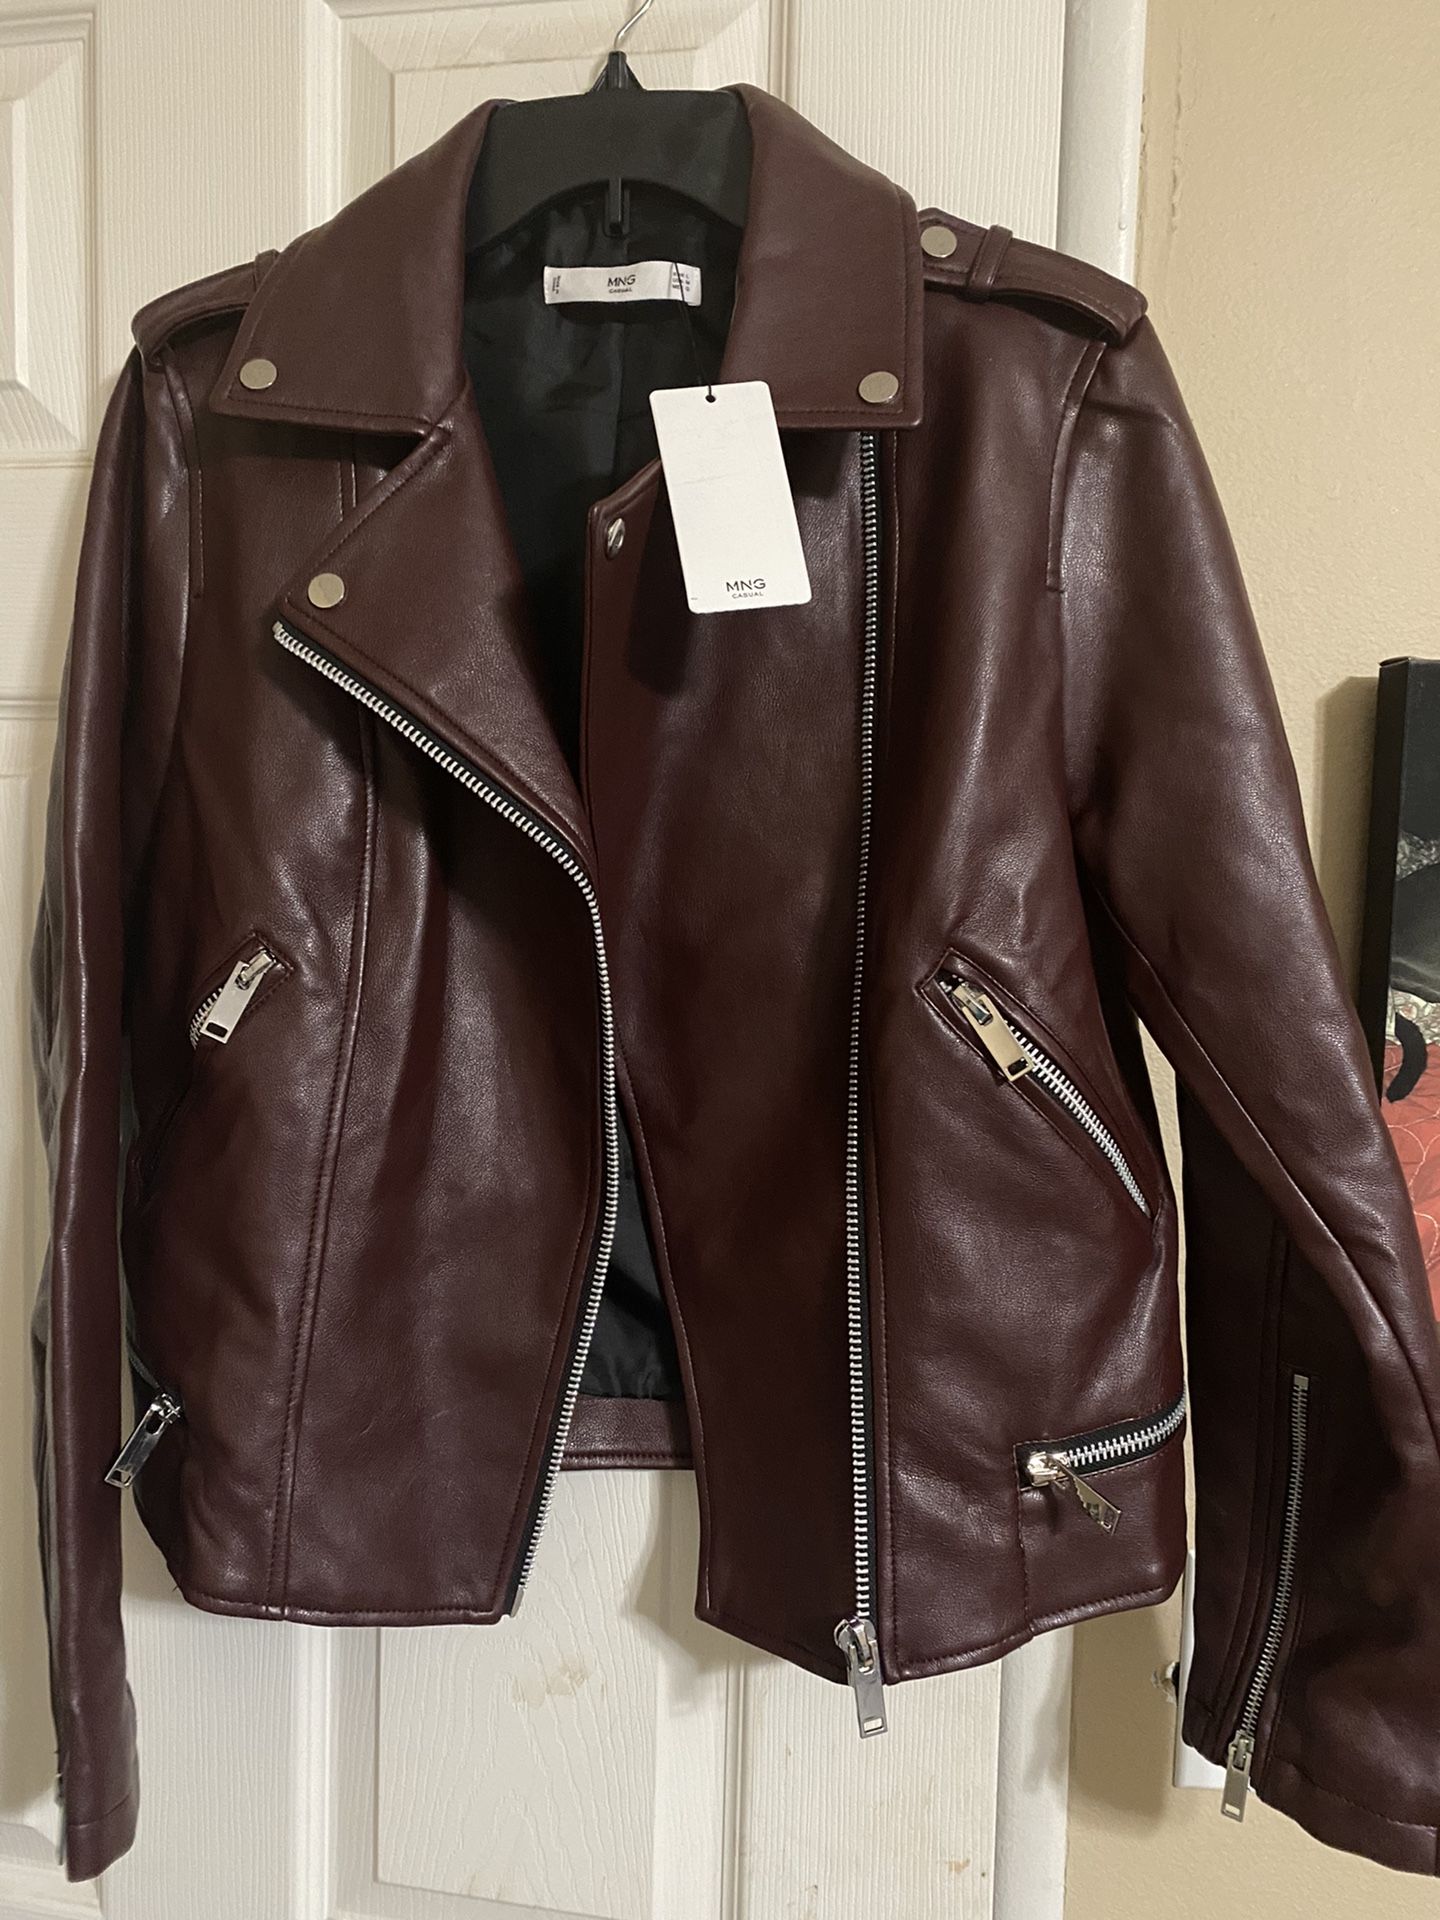 MNG (Mango) leather jacket